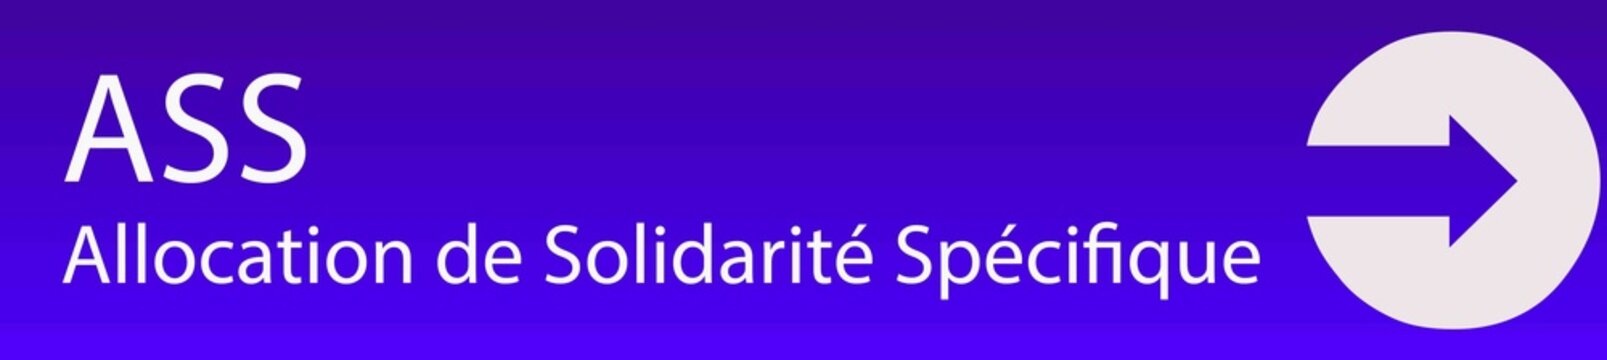 ASS - Allocation de Solidarité Spécifique